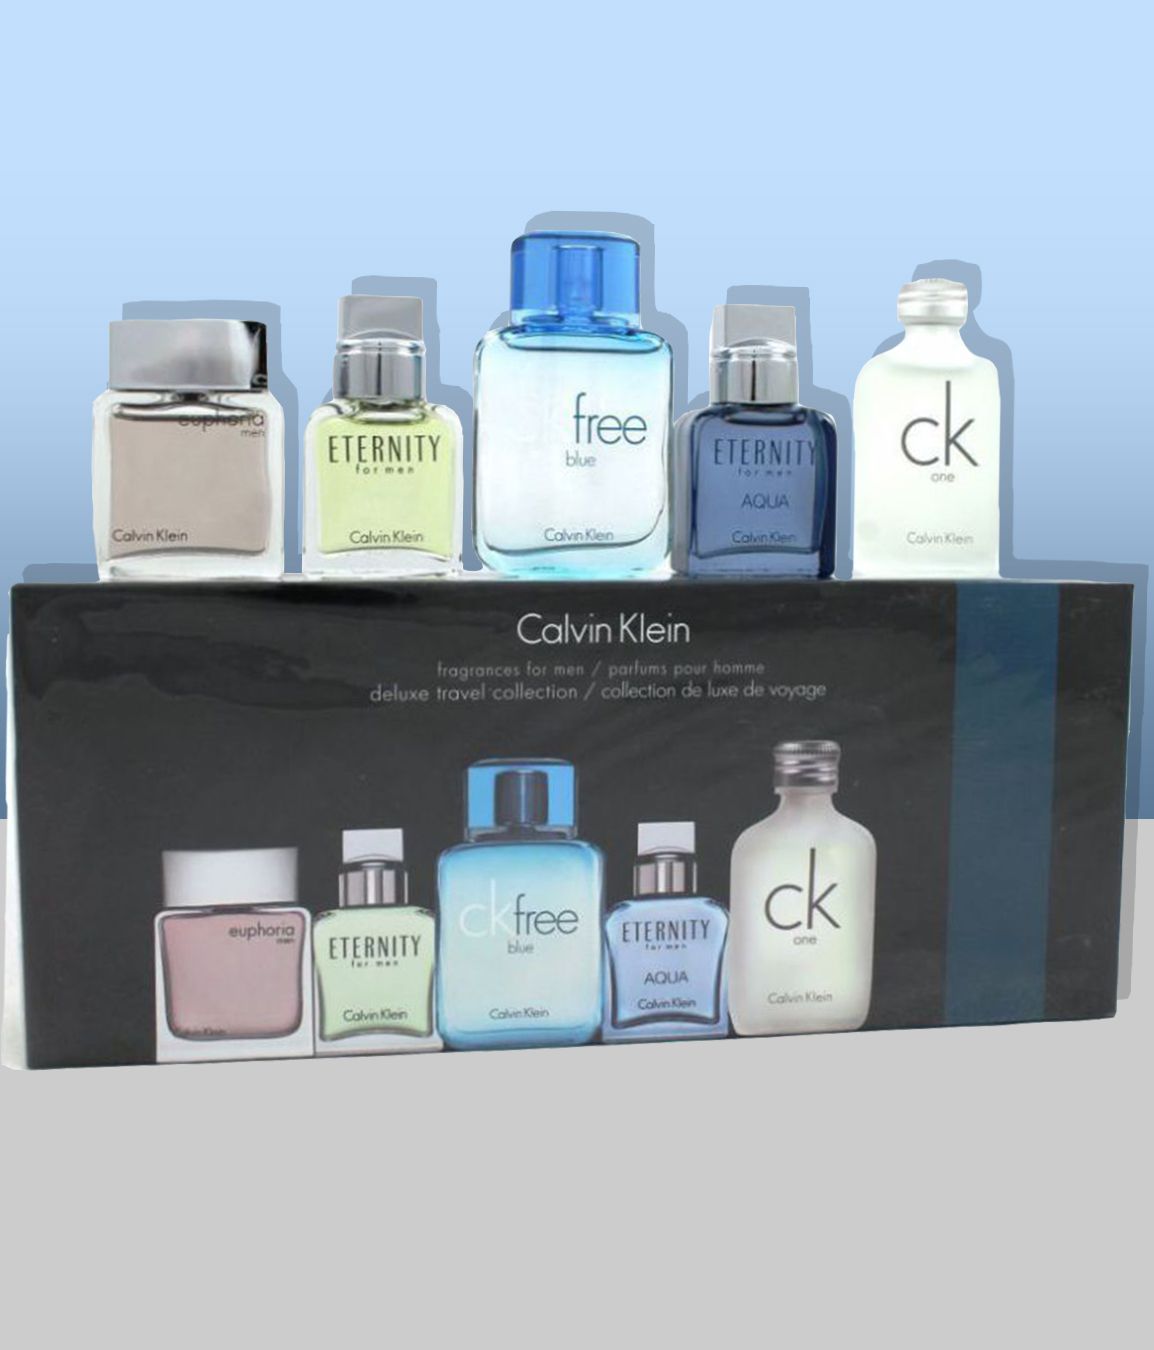 calvin klein perfume gift set price